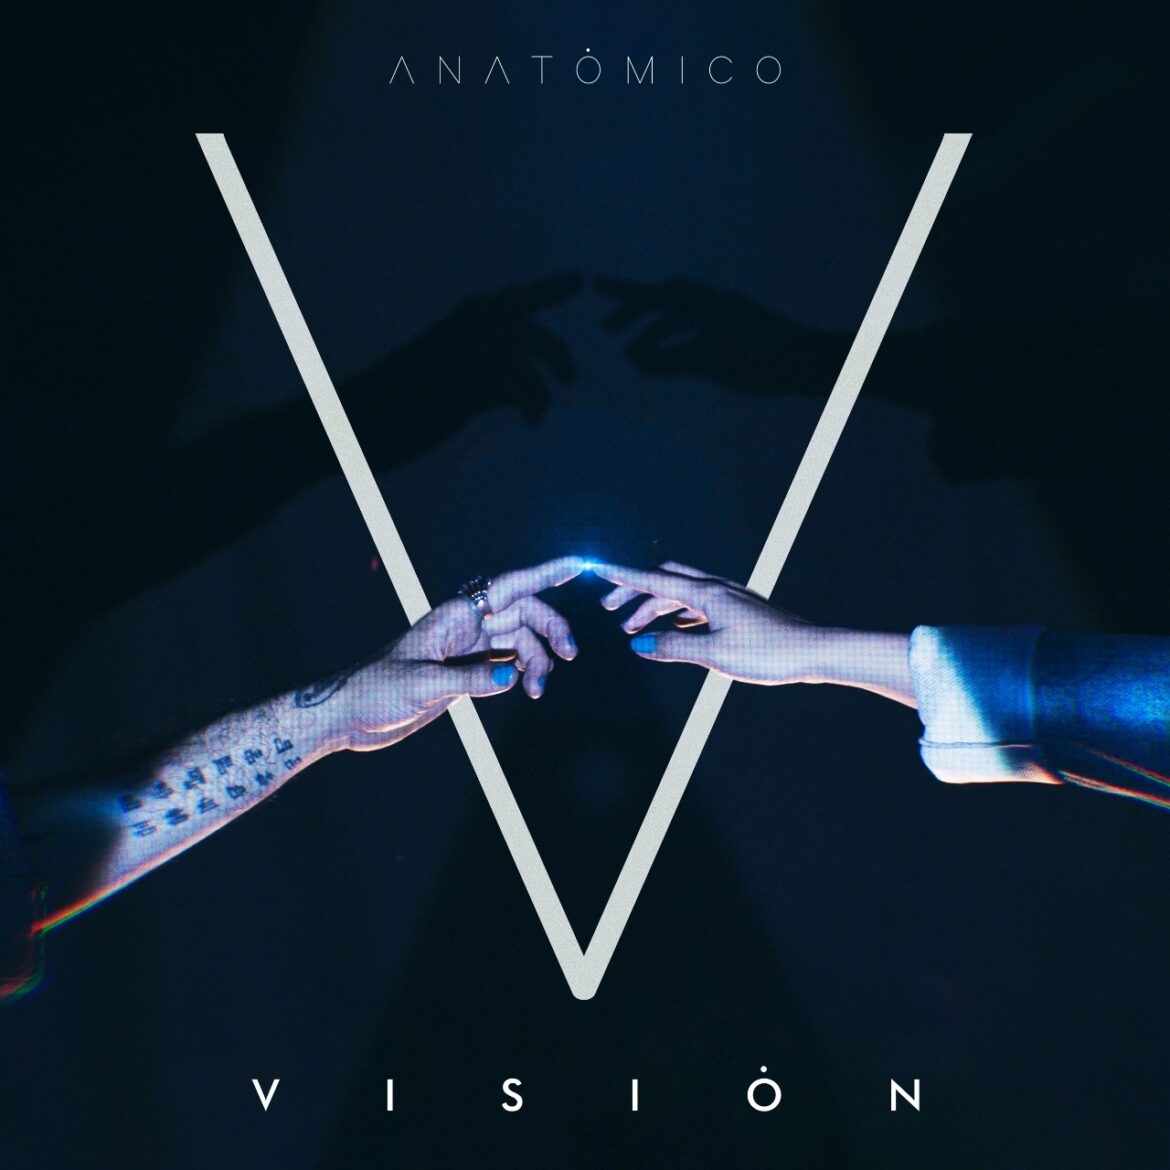 Anatómico lanza ‘Visión’ una canción de resiliencia y reconciliación